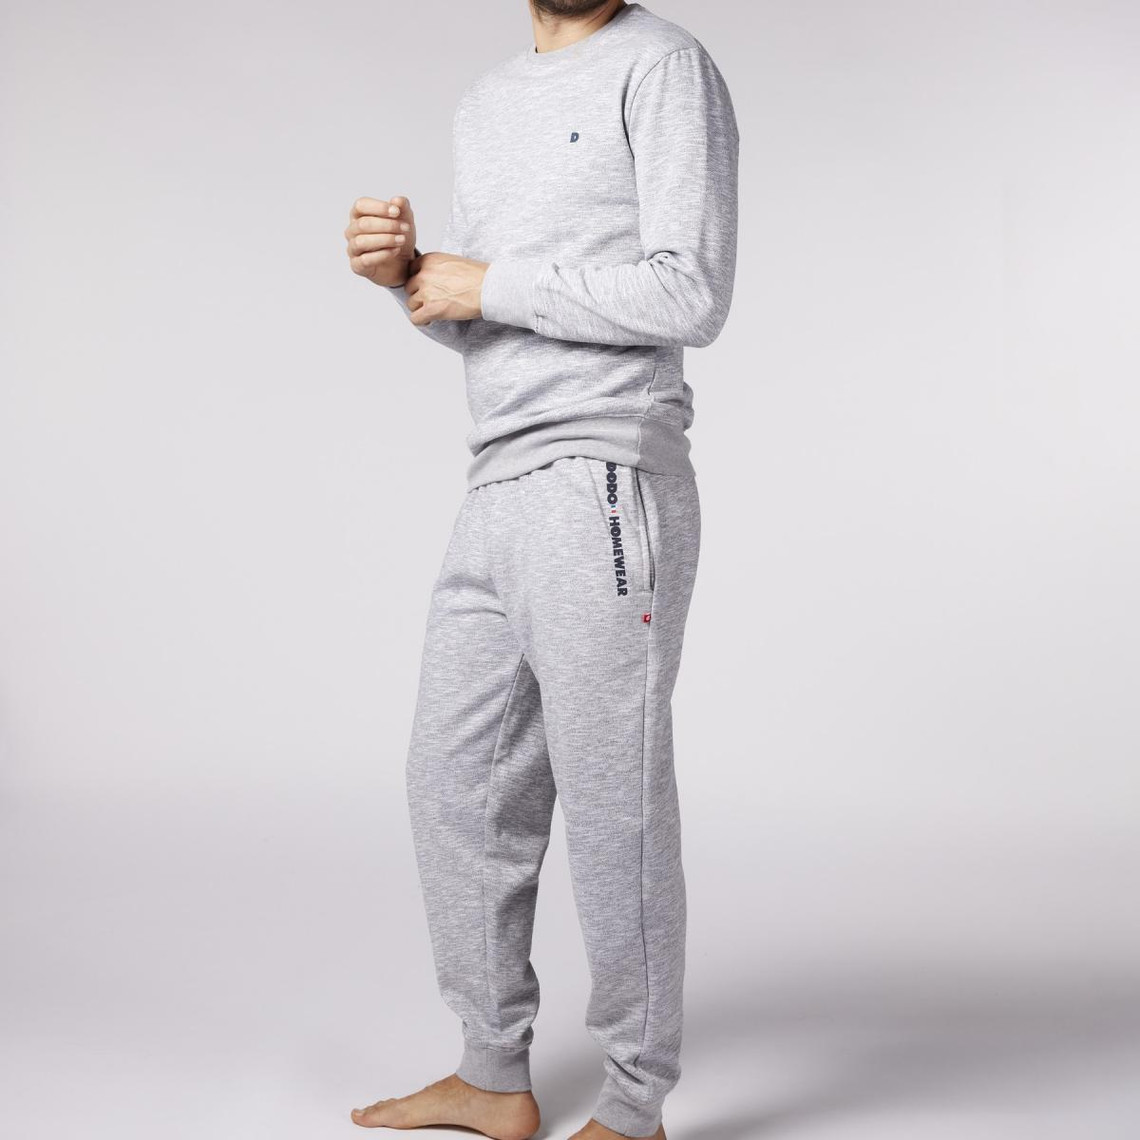 Pyjama Long homme en Coton - Gris Chiné